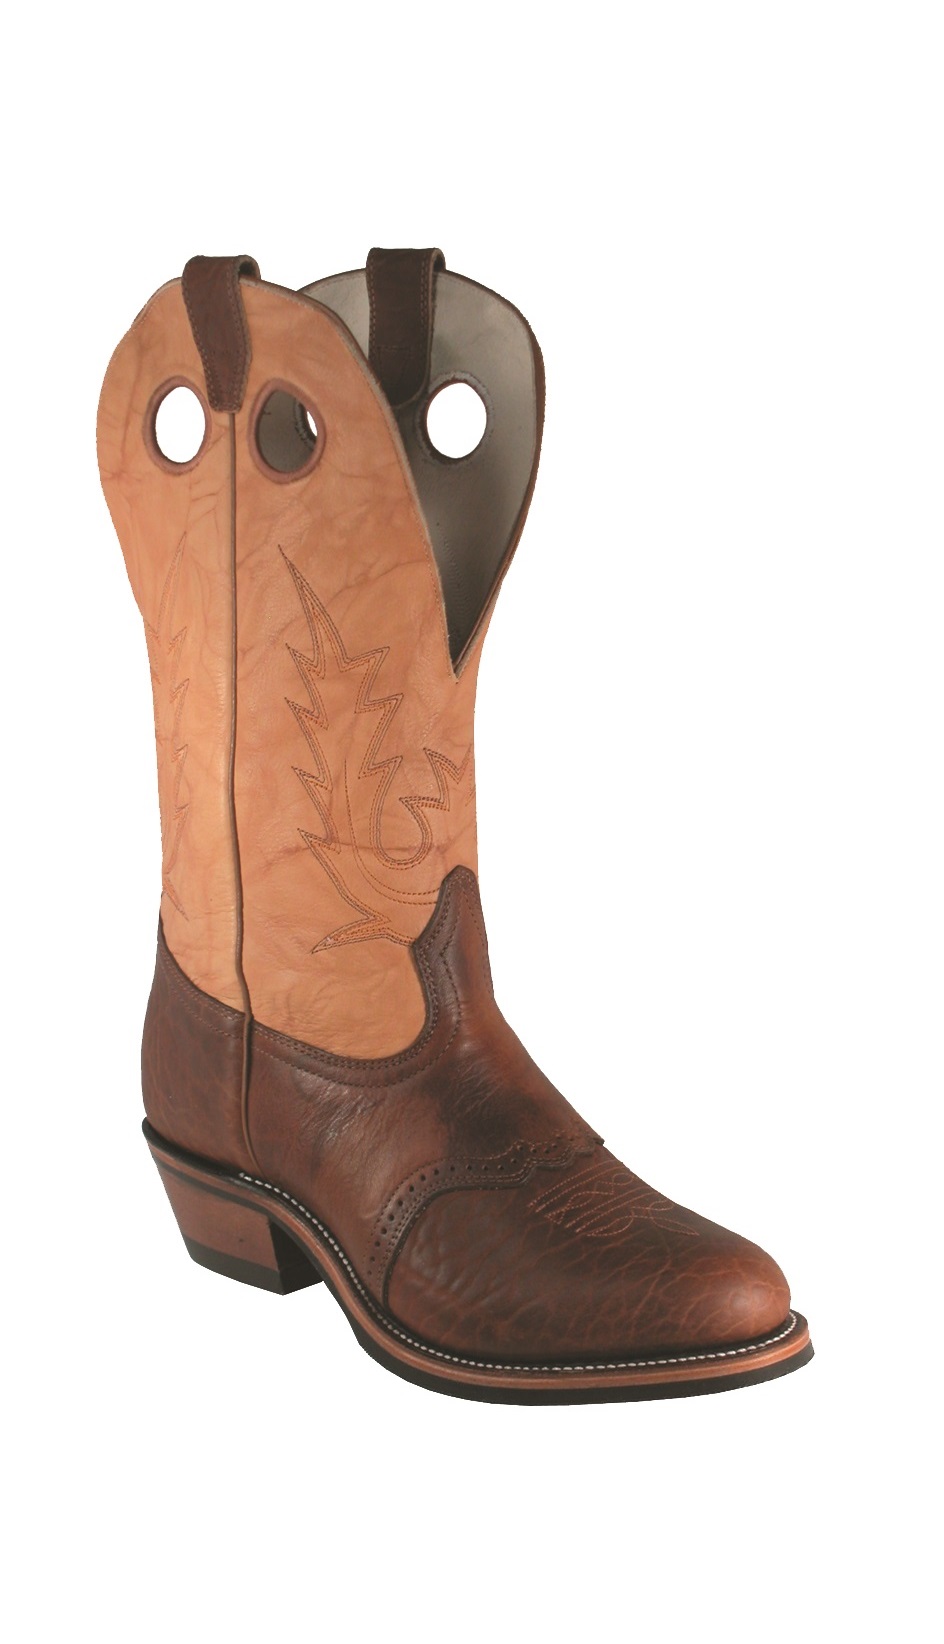 buckaroo style cowboy boots